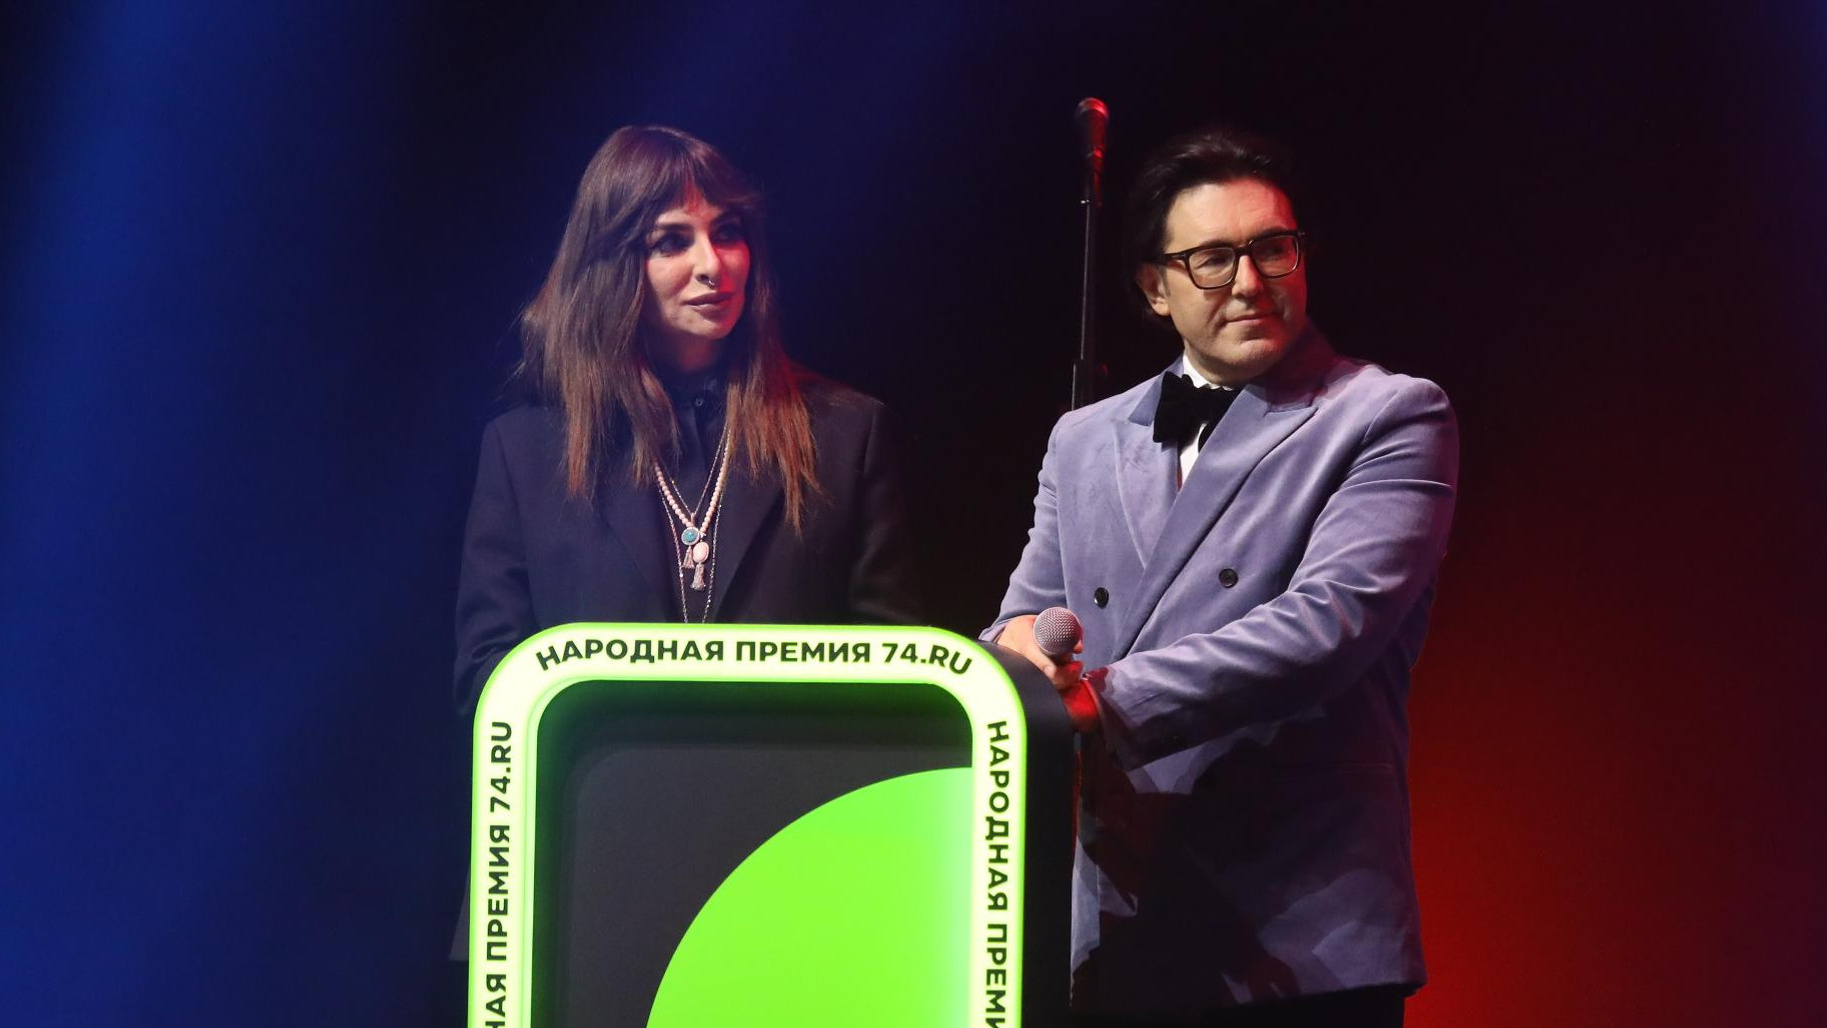 Андрей Малахов и Екатерина Варнава наградят лучшие компании Тюмени. Где смотреть прямой эфир